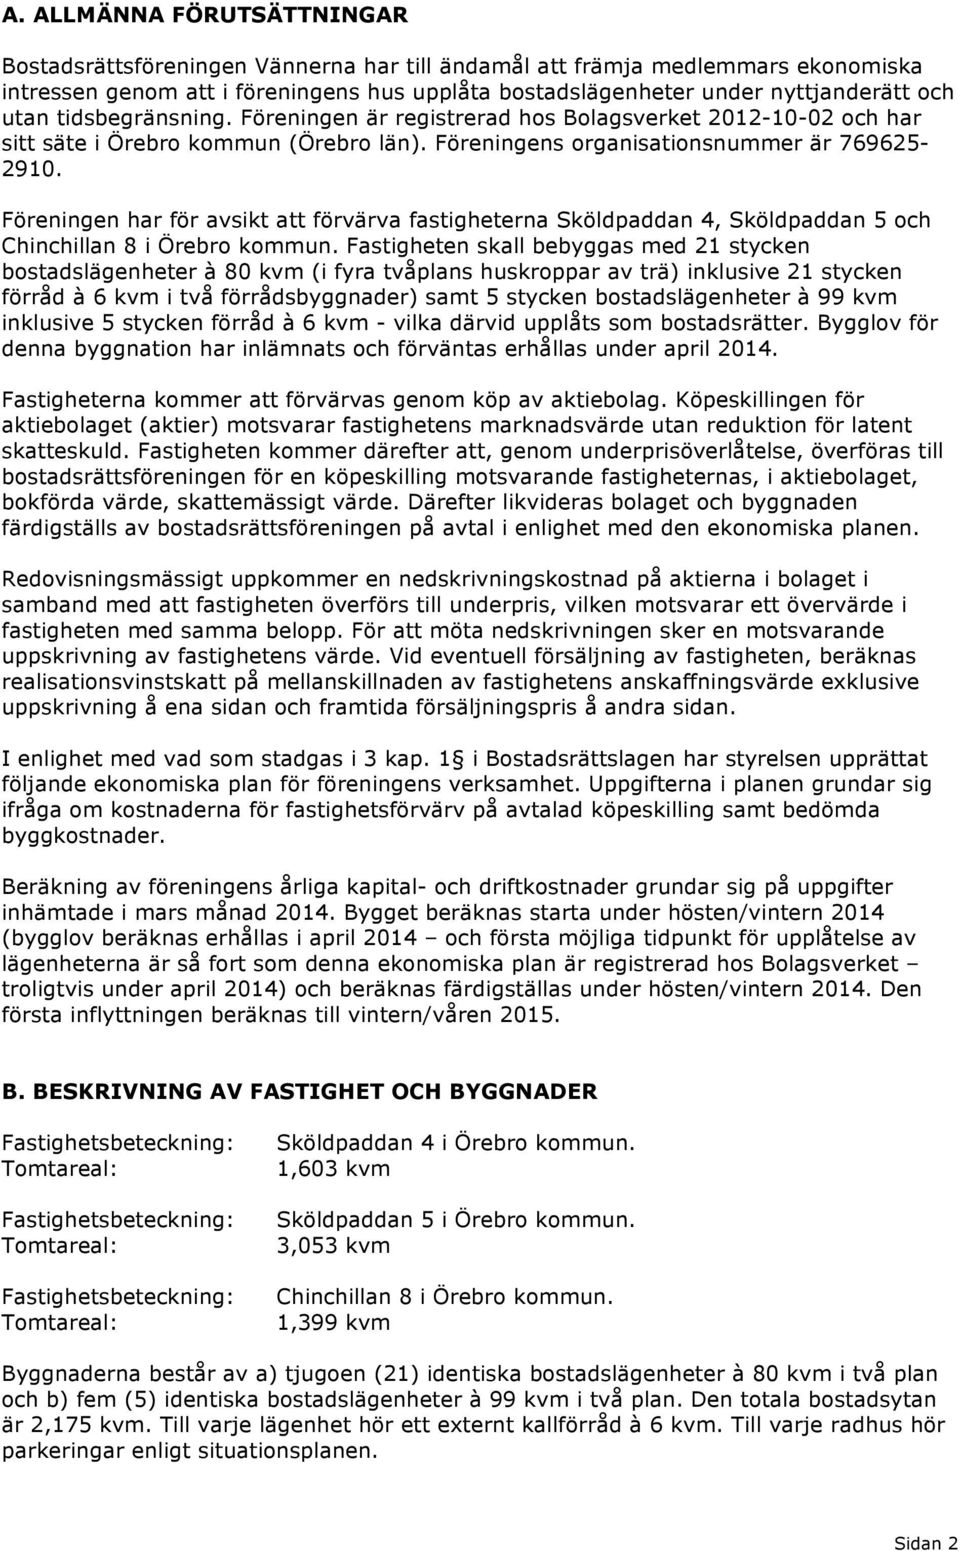 Föreningen har för avsikt att förvärva fastigheterna Sköldpaddan 4, Sköldpaddan och Chinchillan 8 i Örebro kommun.